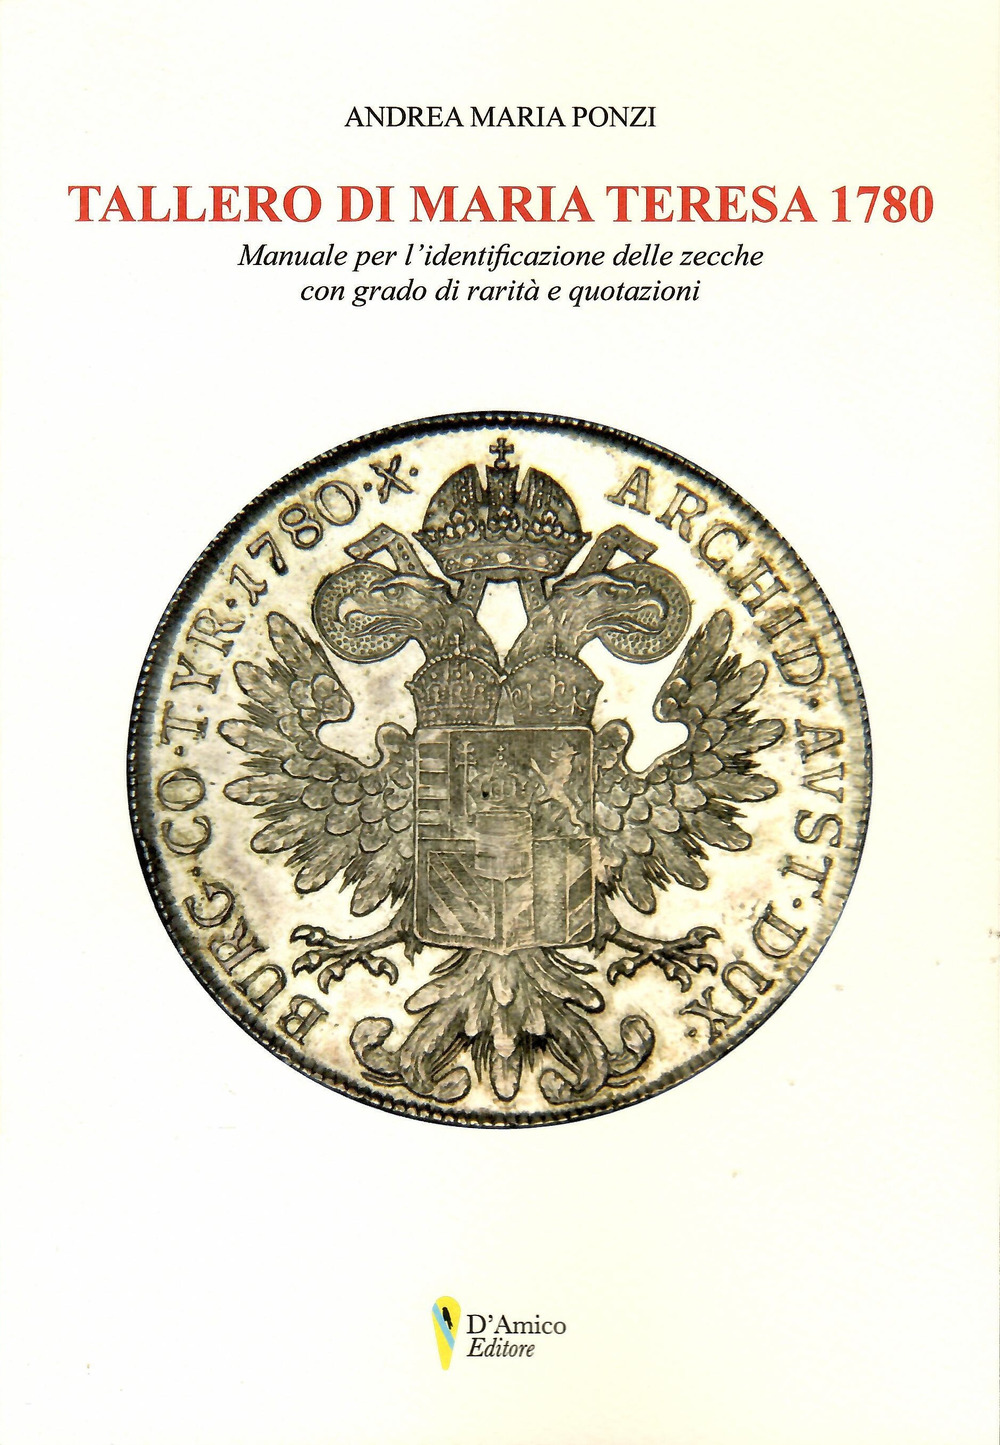 Tallero di Maria Teresa 1780. Manuale per l'identificazione delle zecche con grado di rarità e quotazione